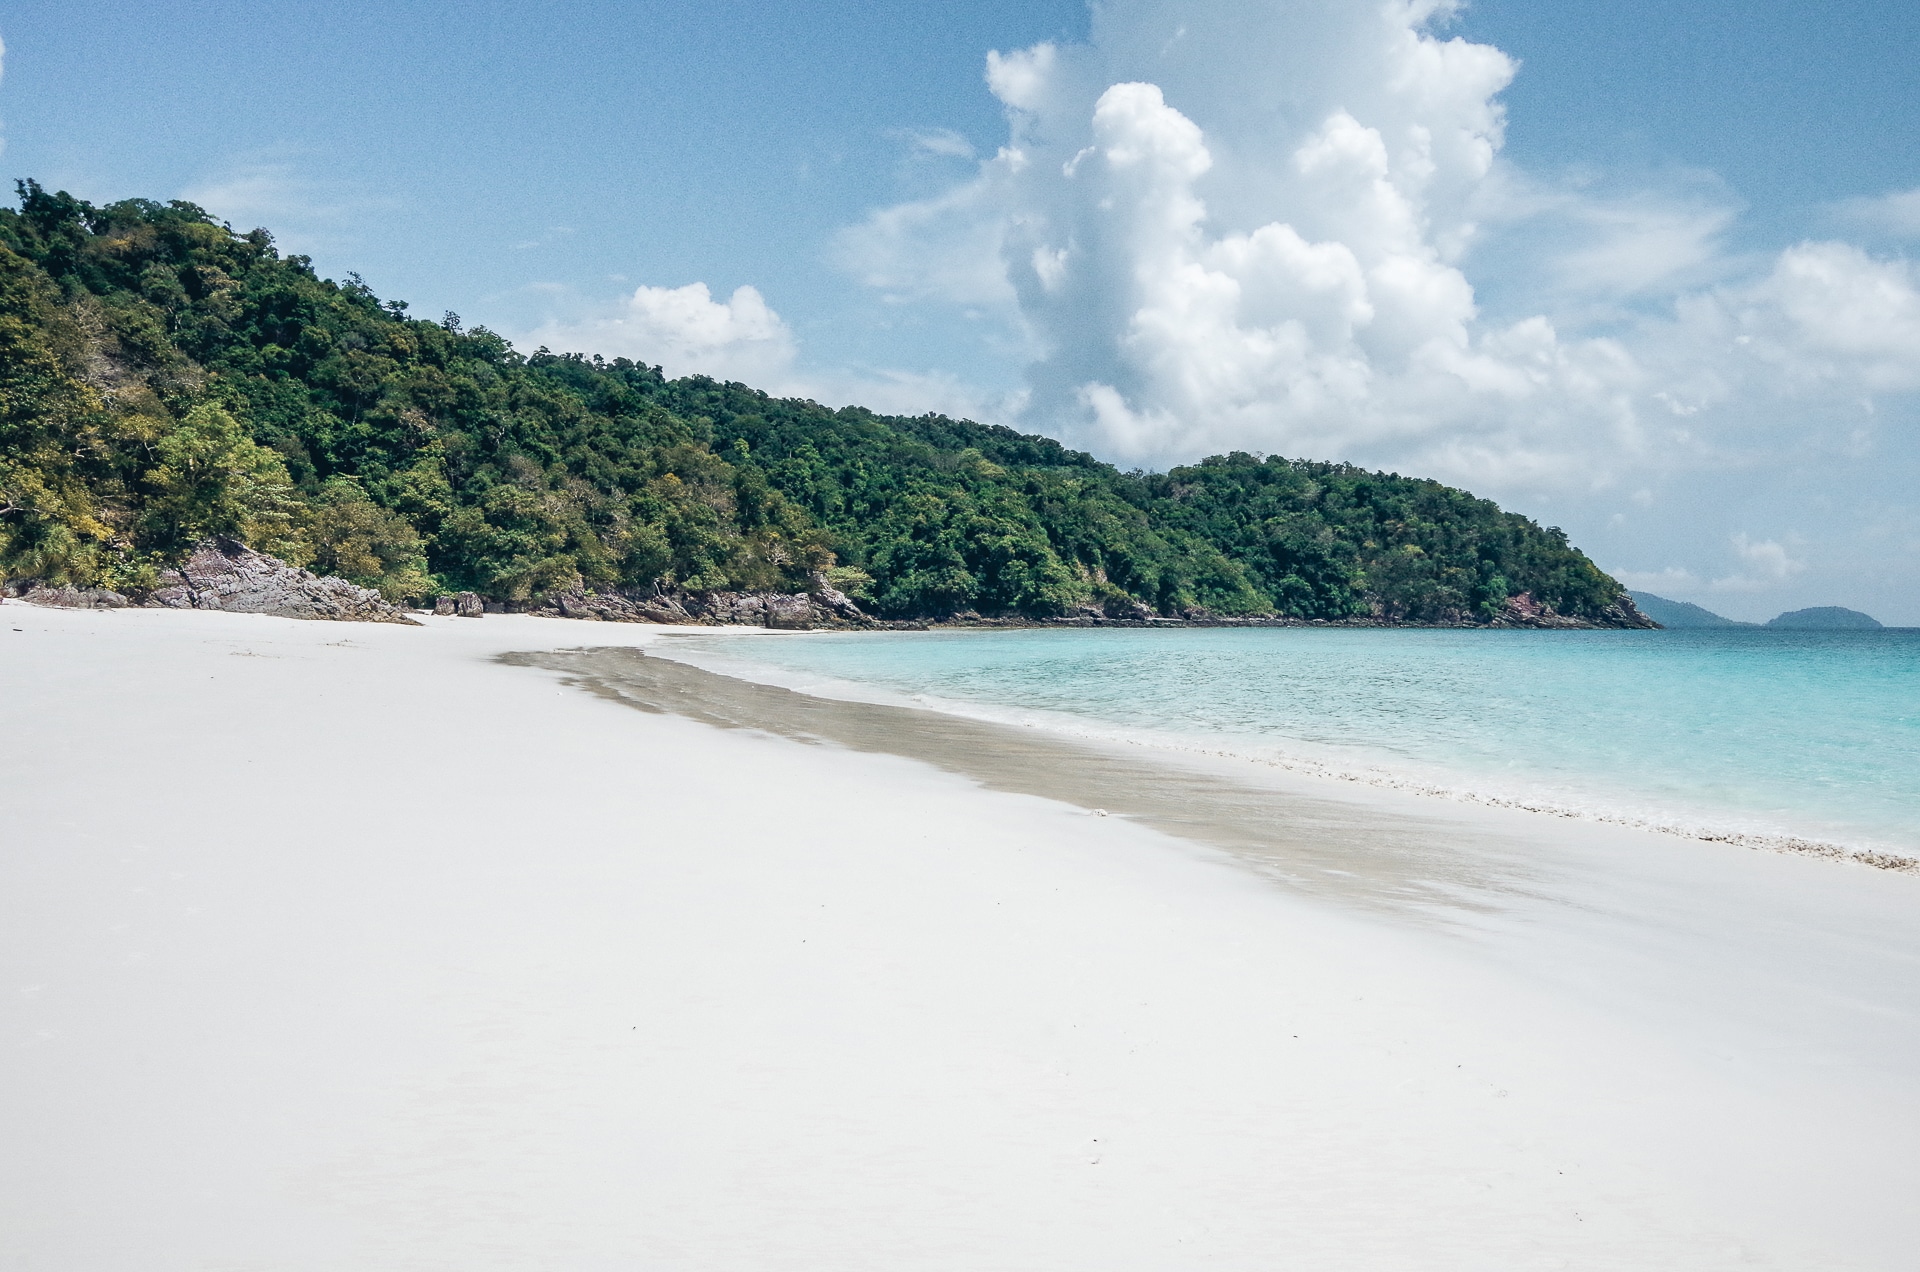 plage au sable blanc immaculé sur une île de l'archipel Kawthaung